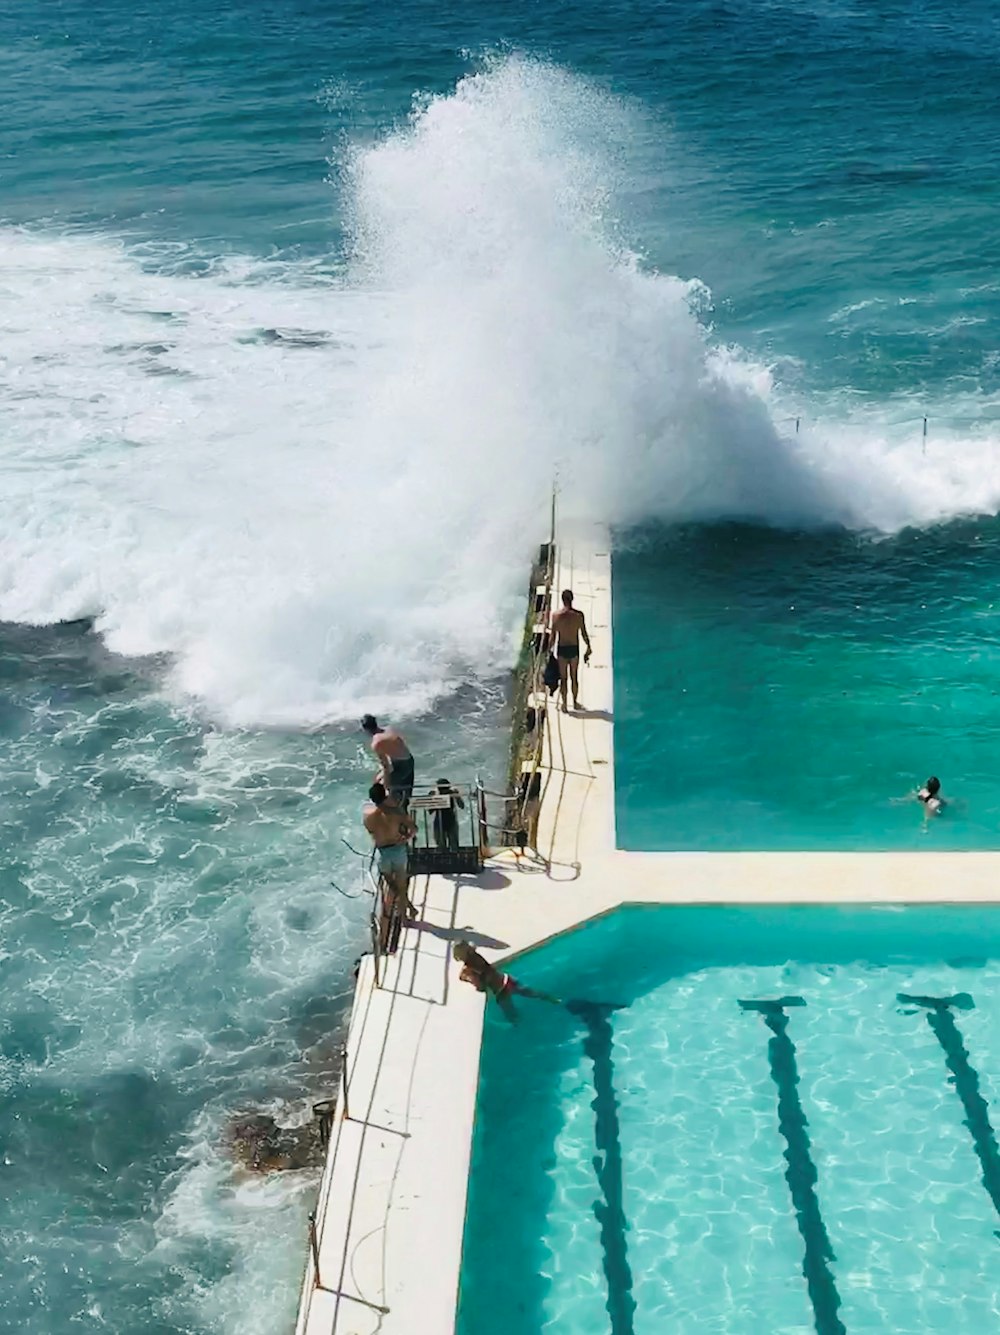 Três homens que estavam na beira da piscina enquanto olhavam para a onda do mar caíram